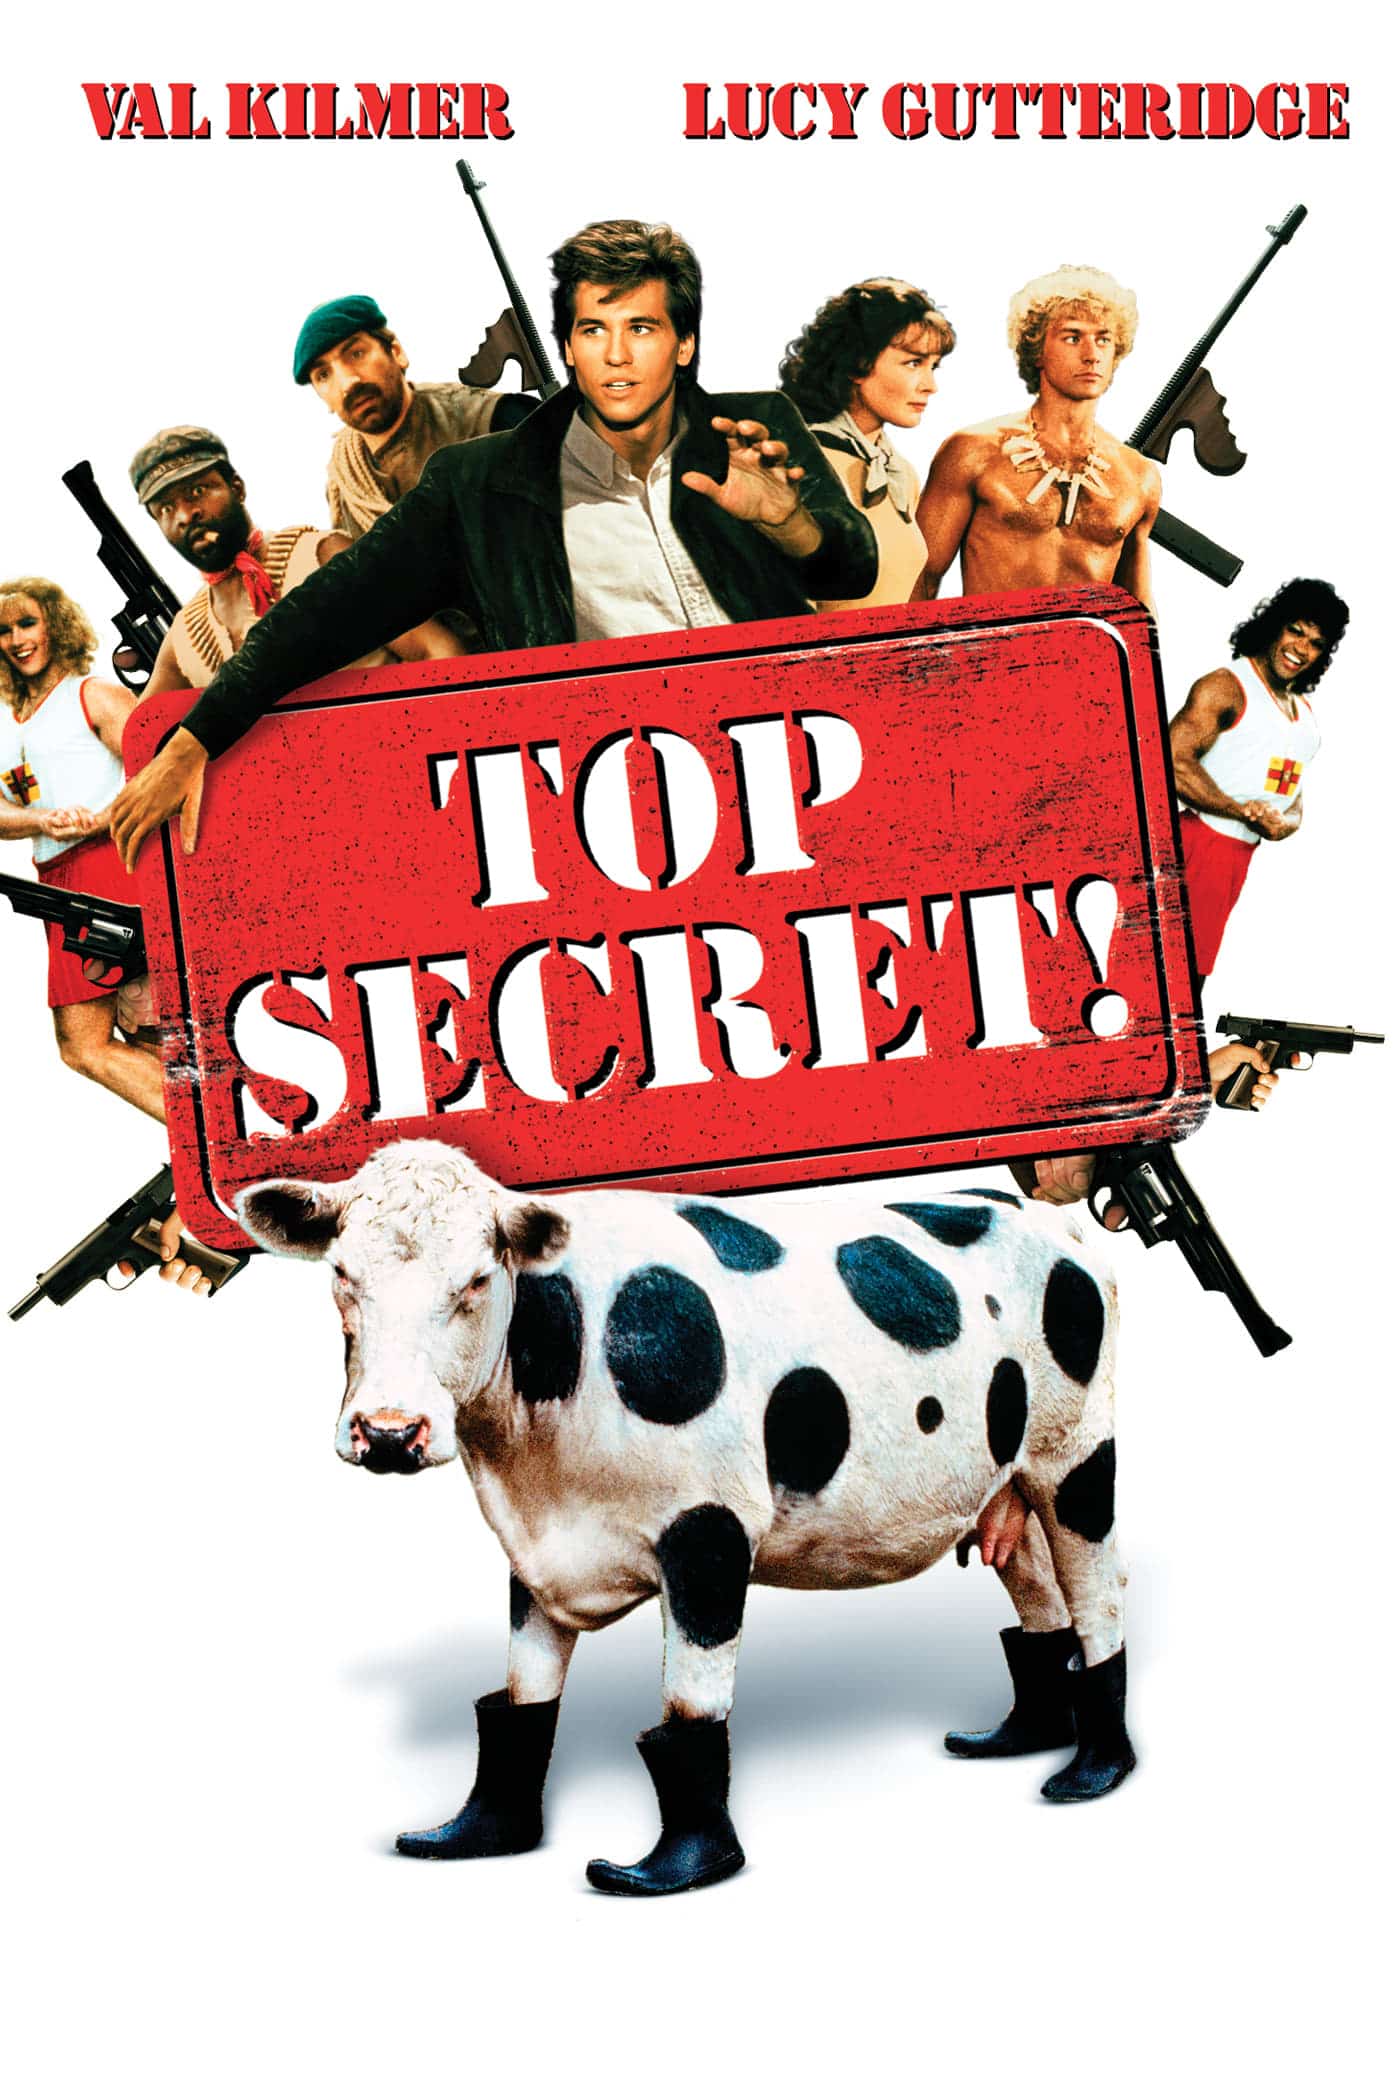 Plakat von "Top Secret!"